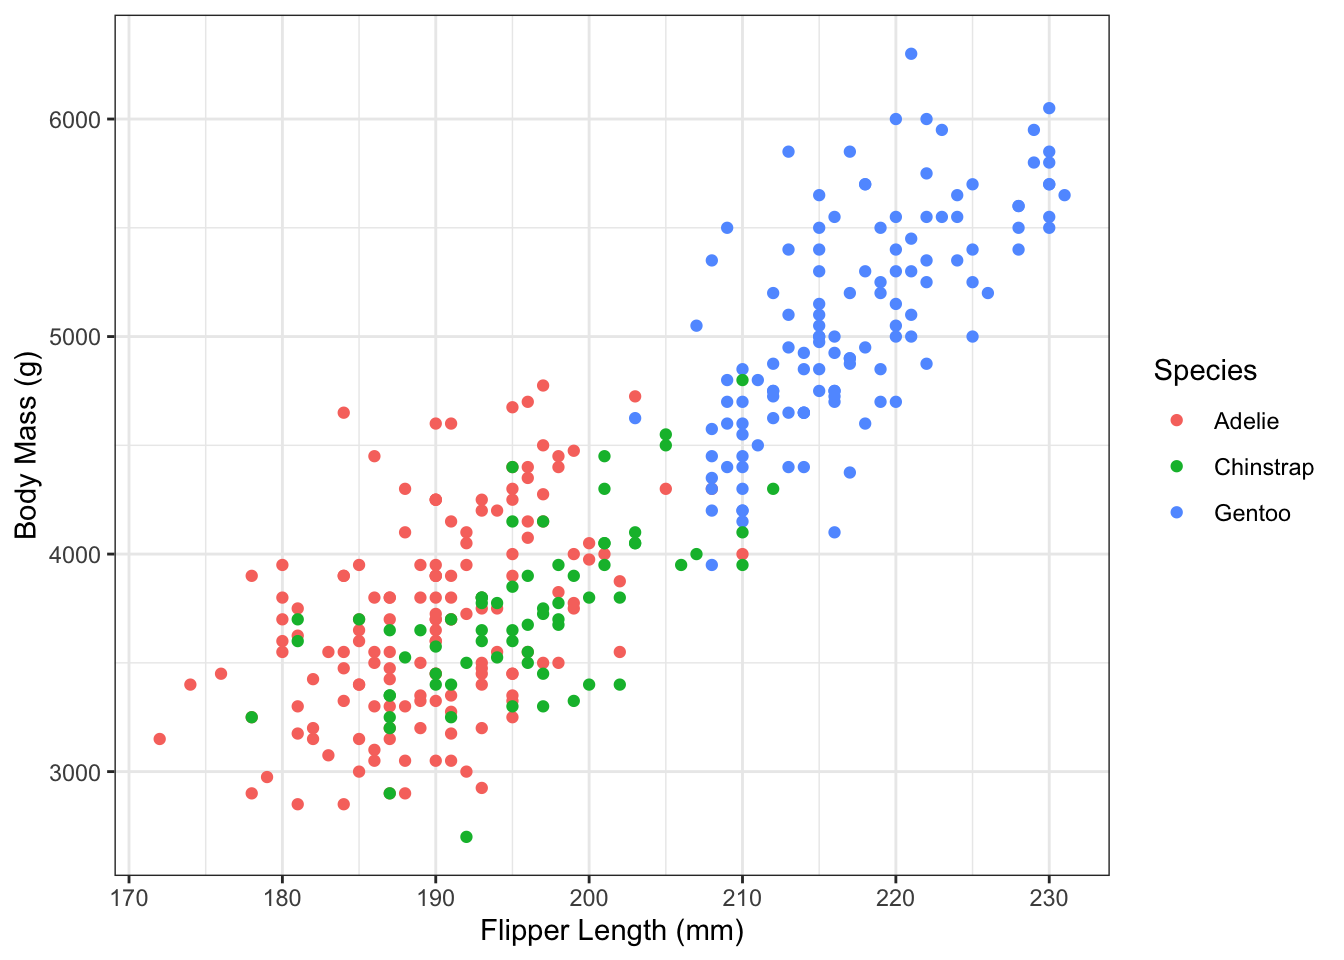 Flipper length and body mass in the Palmer Penguin dataset.